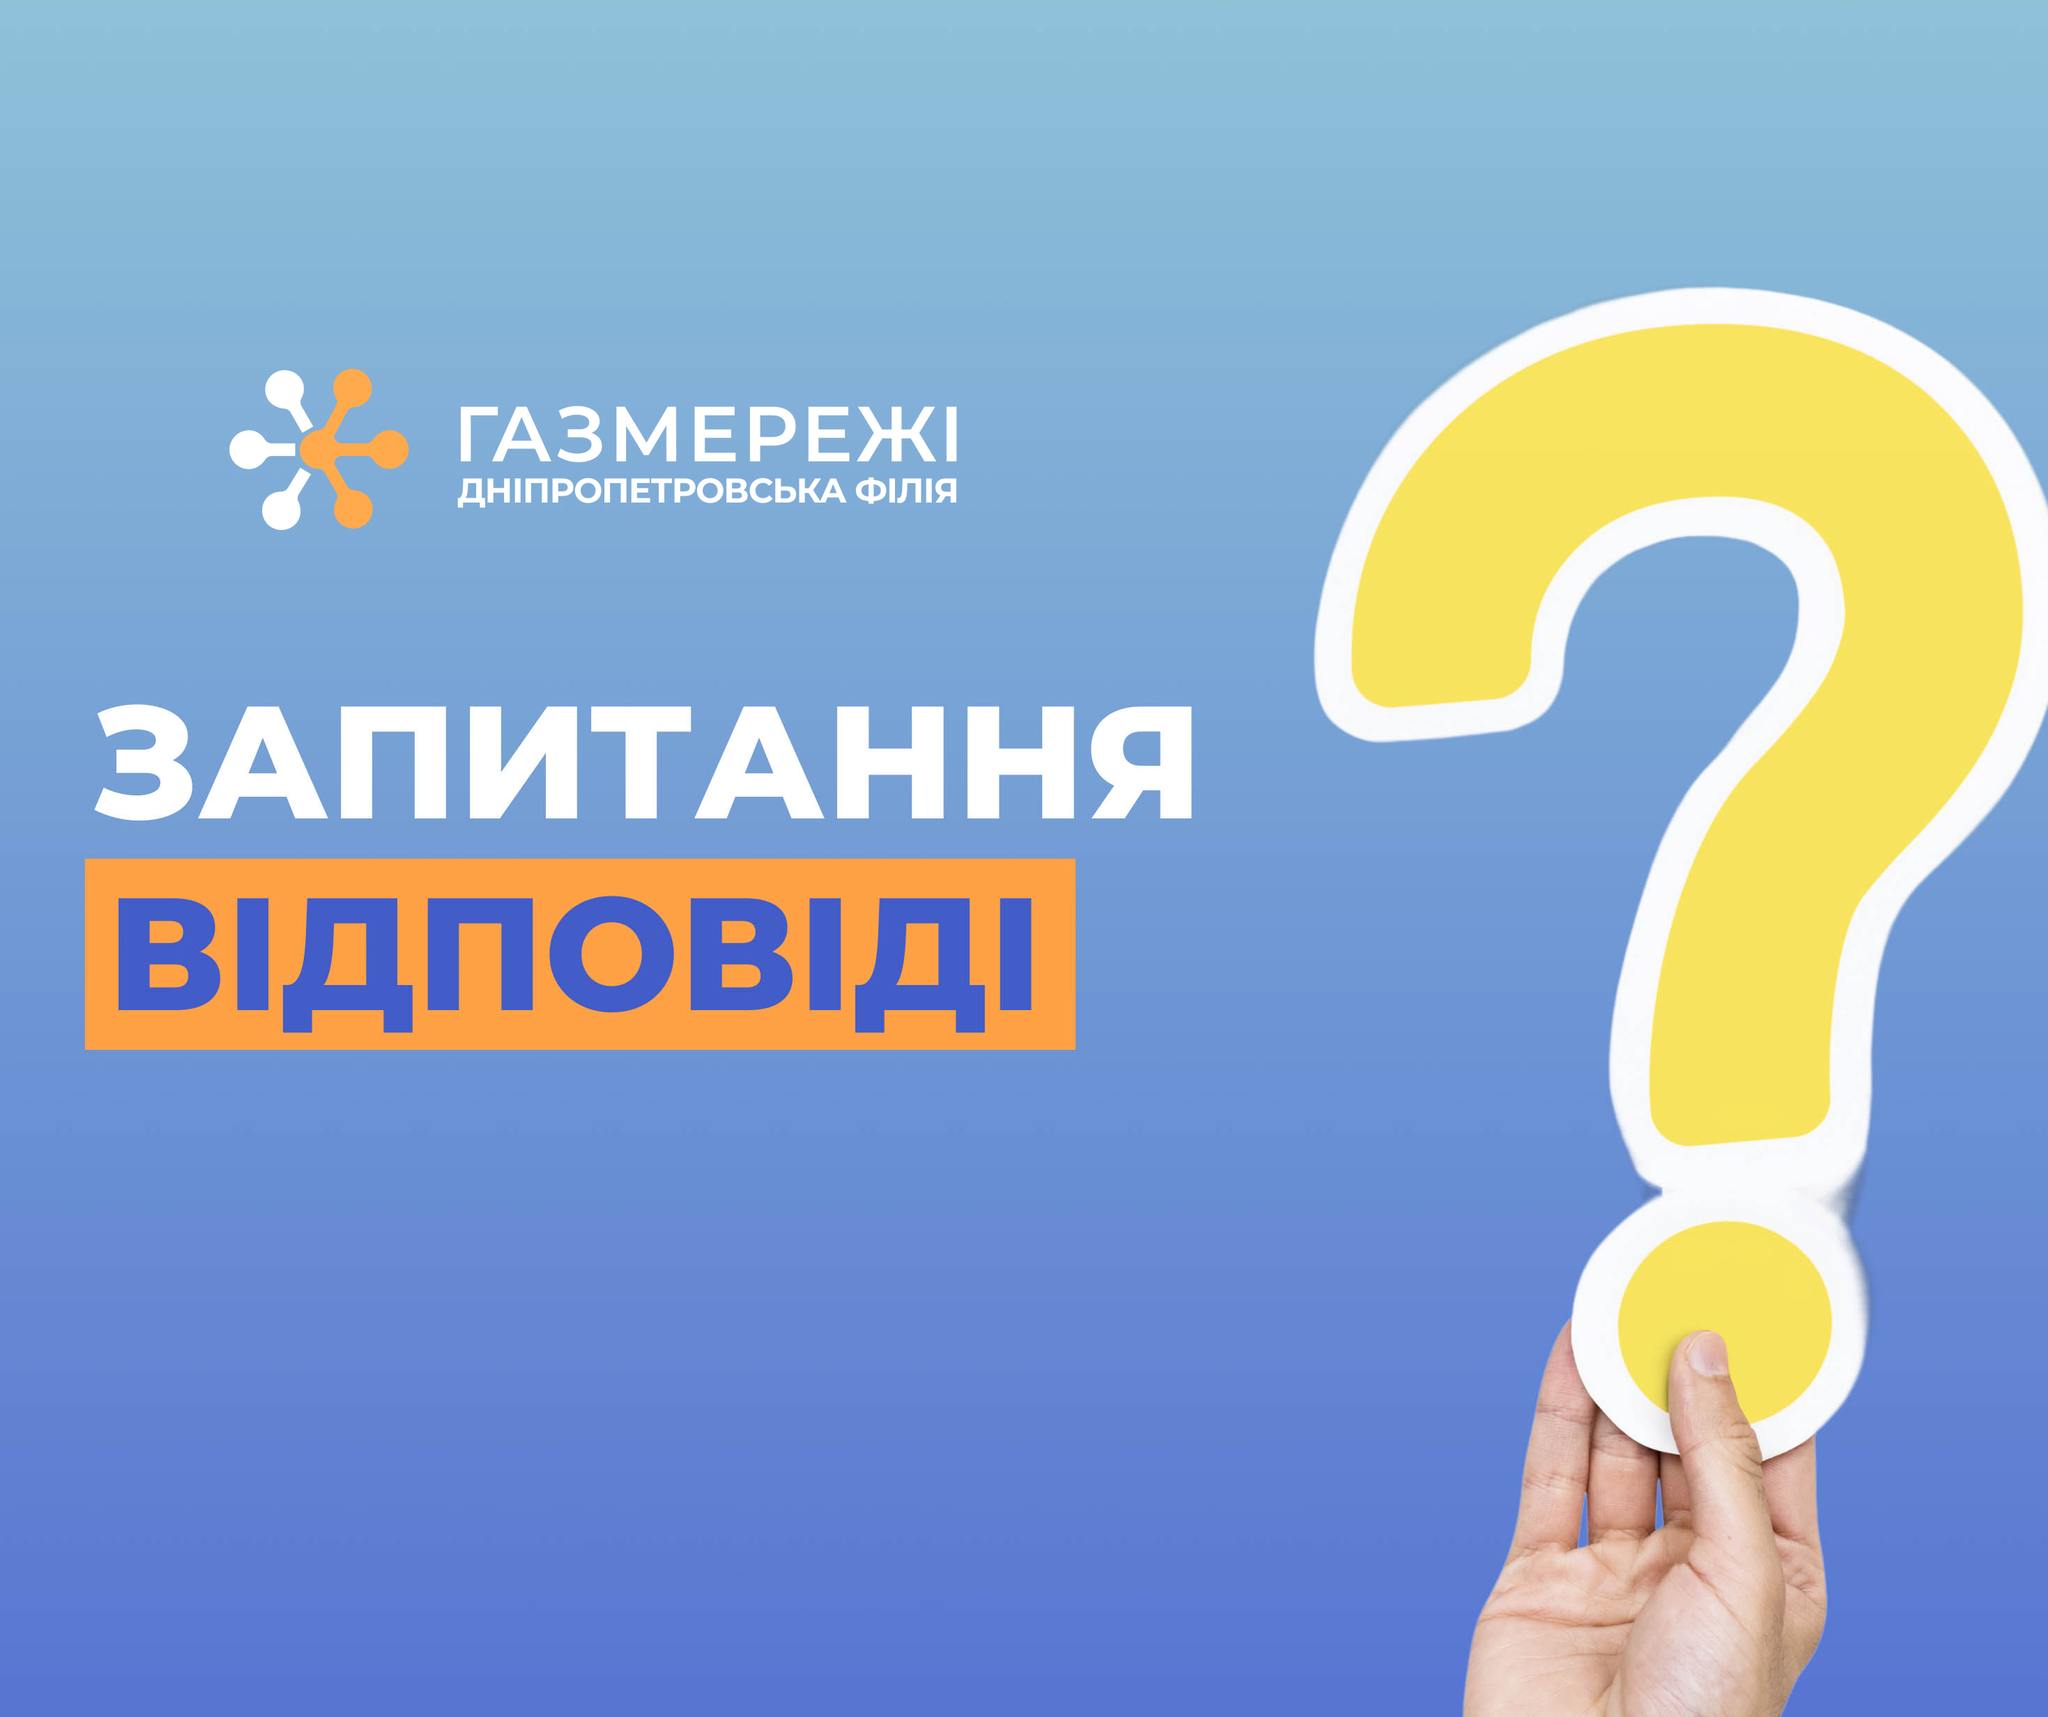 Дніпропетровська філія «Газмережі» відповідає на актуальні запитання щодо розподілу газу в області